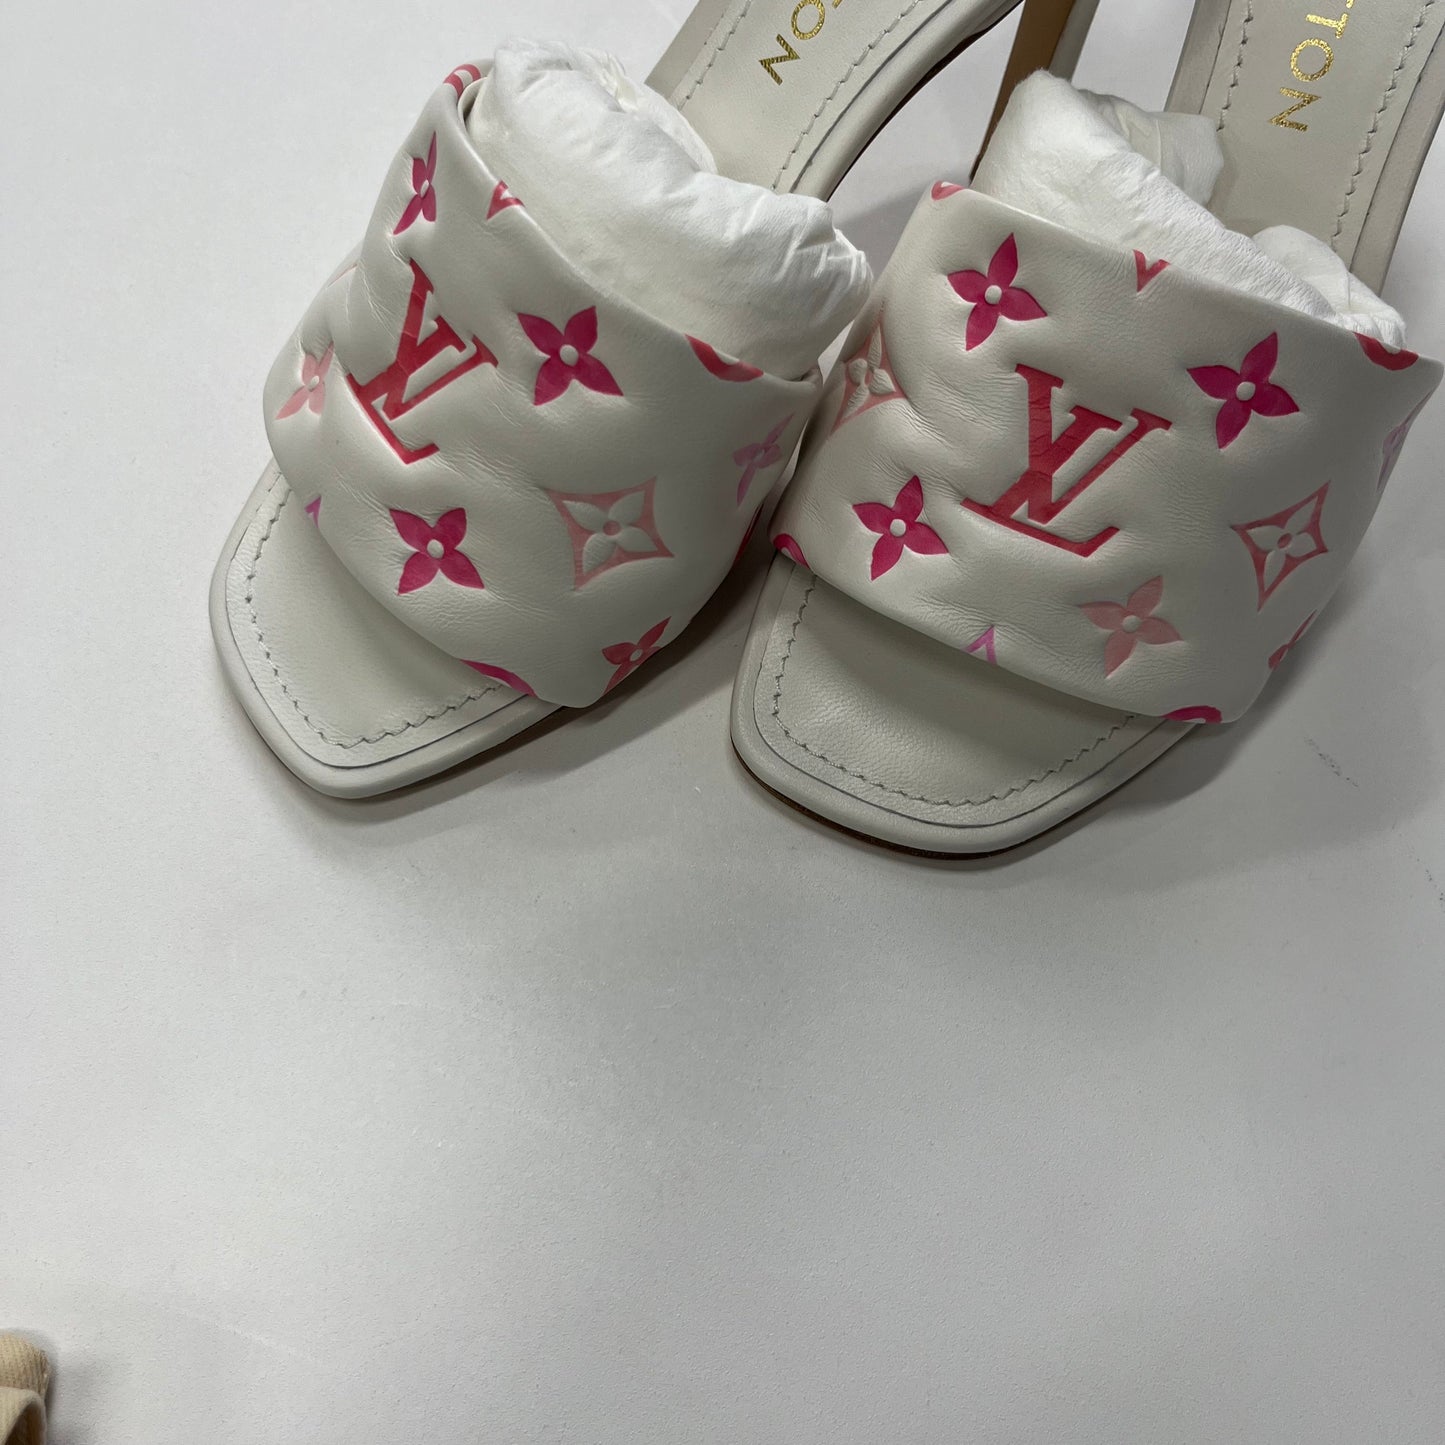 White Shoes Heels Block Louis Vuitton, Size 8.5